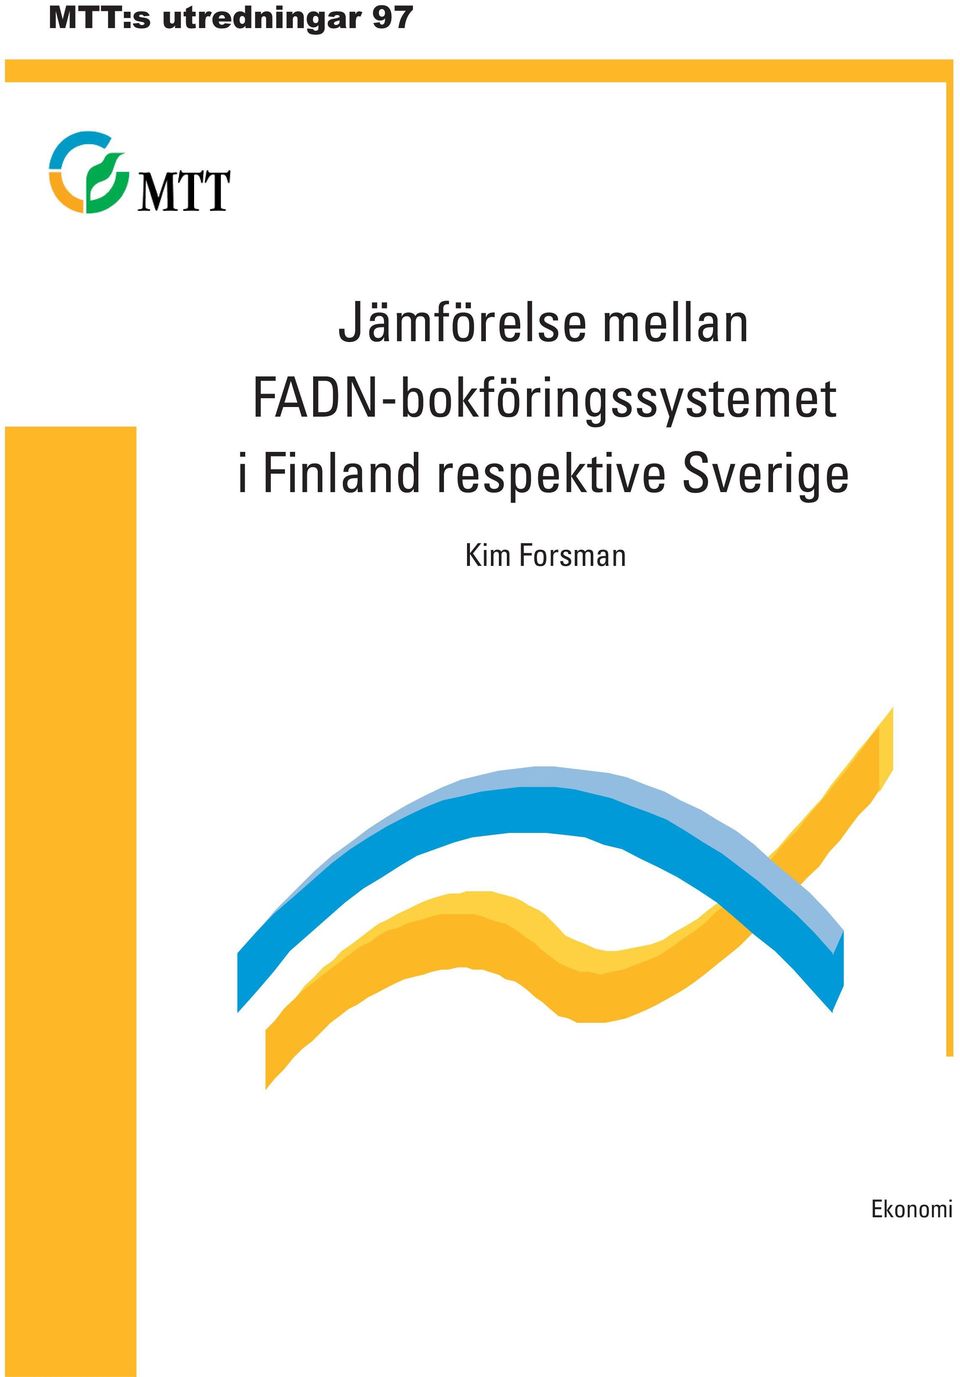 FADN-bokföringssystemet i